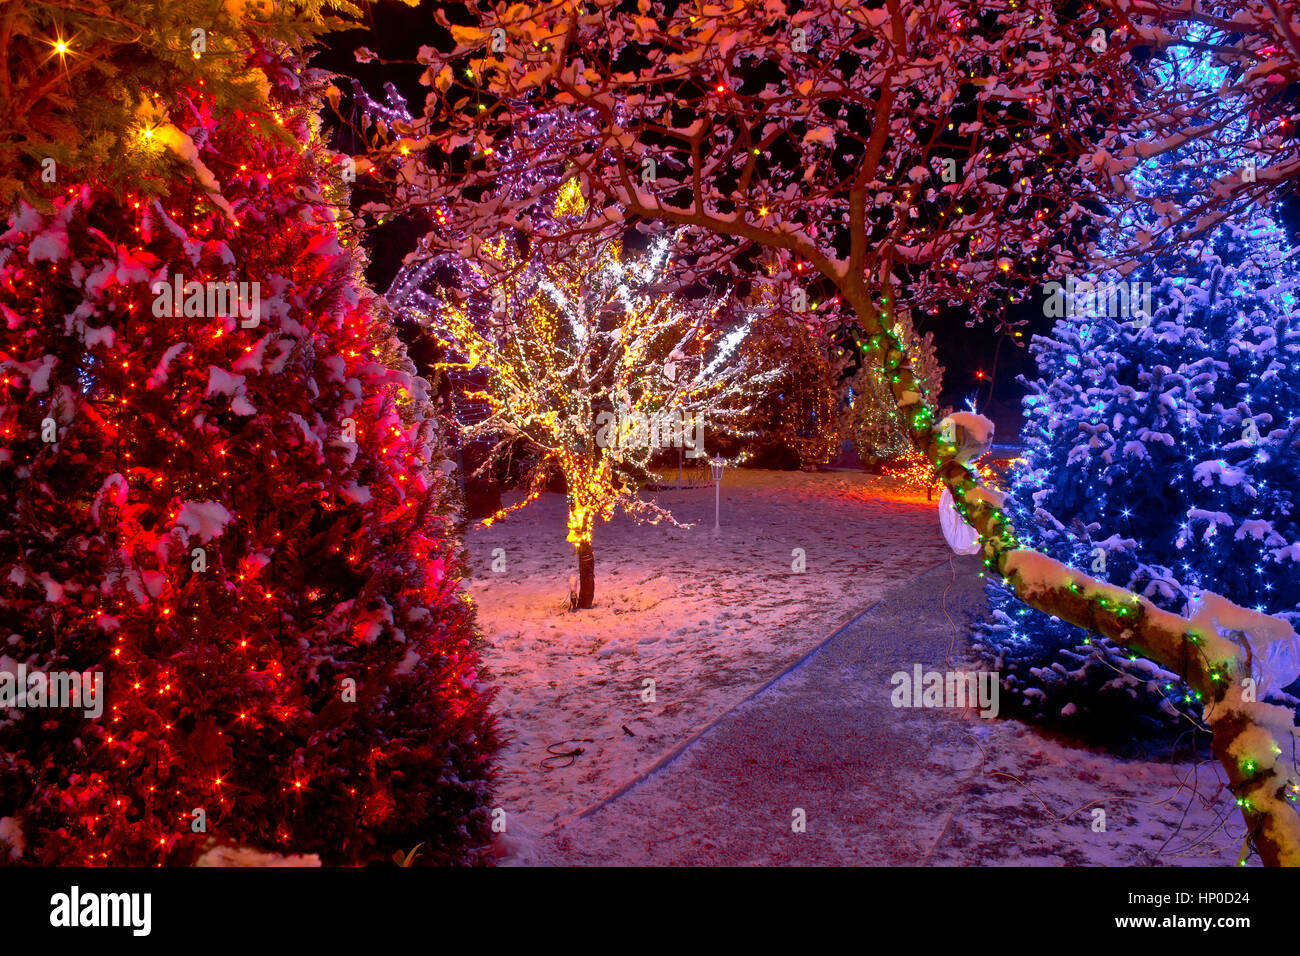 Bunte Weihnachtsbeleuchtung auf Bäumen, glühende Natur Stockfotografie -  Alamy